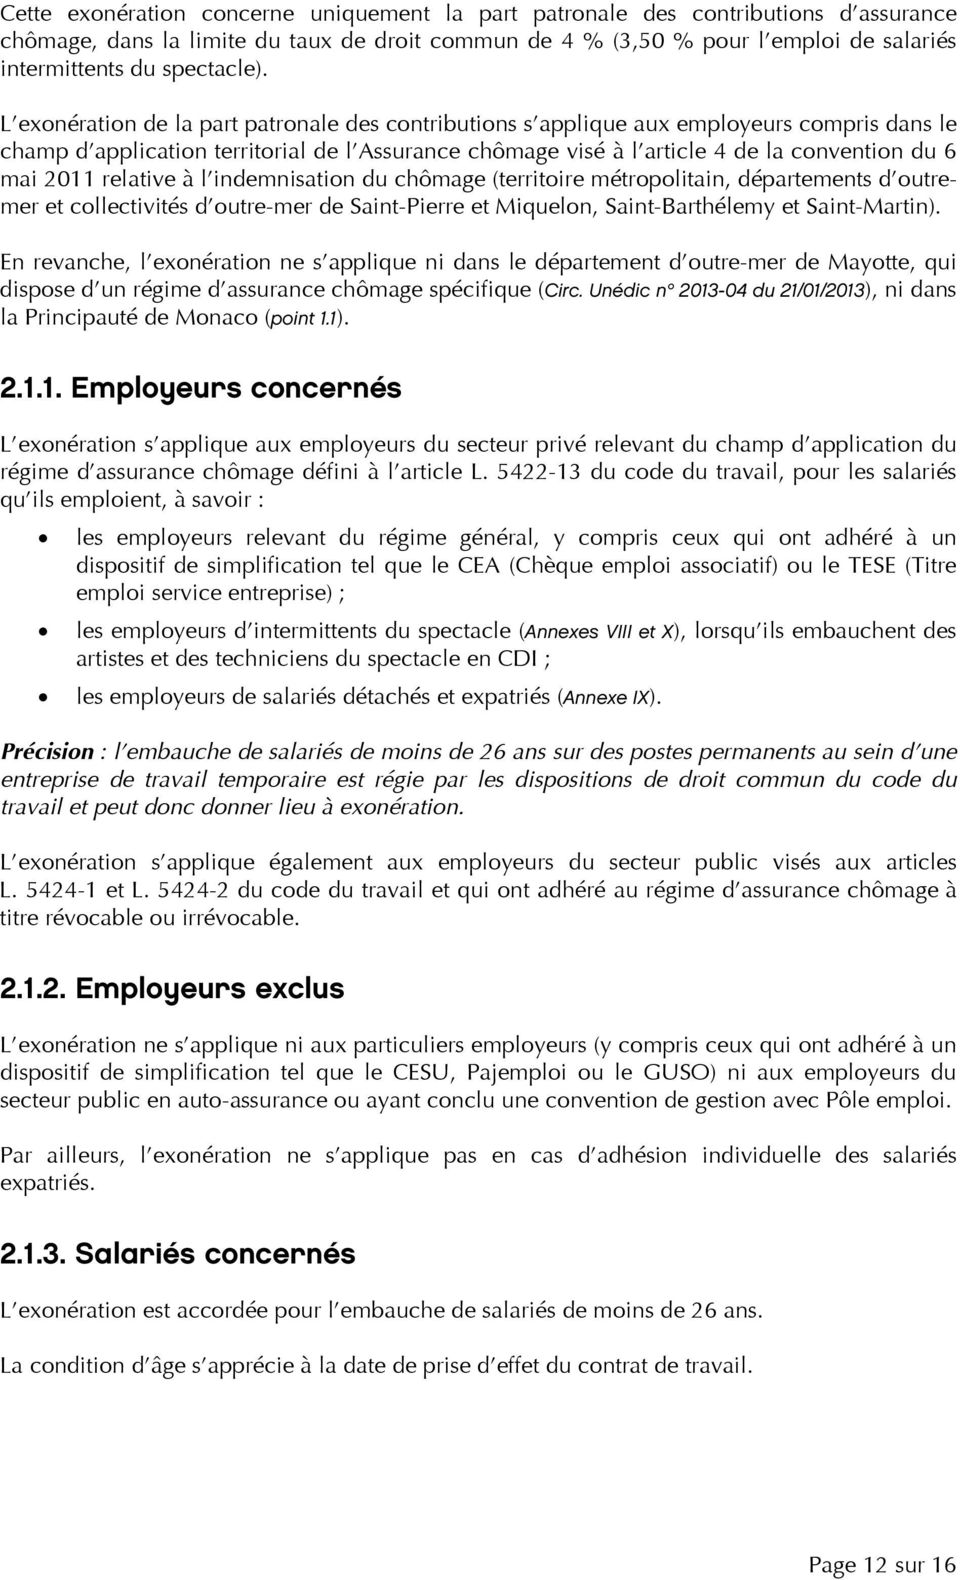 L exonération de la part patronale des contributions s applique aux employeurs compris dans le champ d application territorial de l Assurance chômage visé à l article 4 de la convention du 6 mai 2011